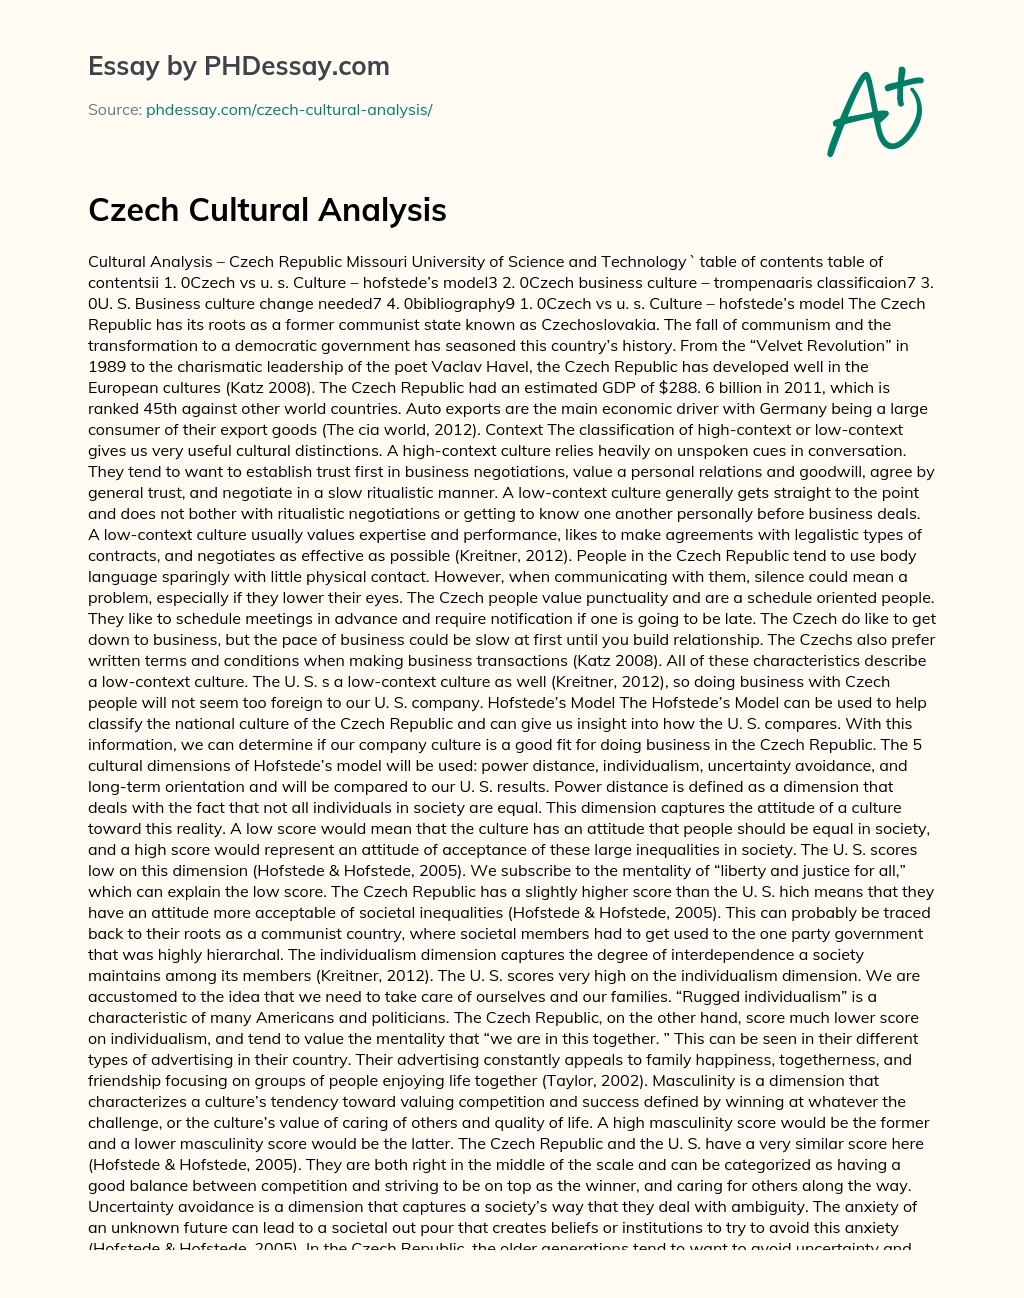 Czech Cultural Analysis essay